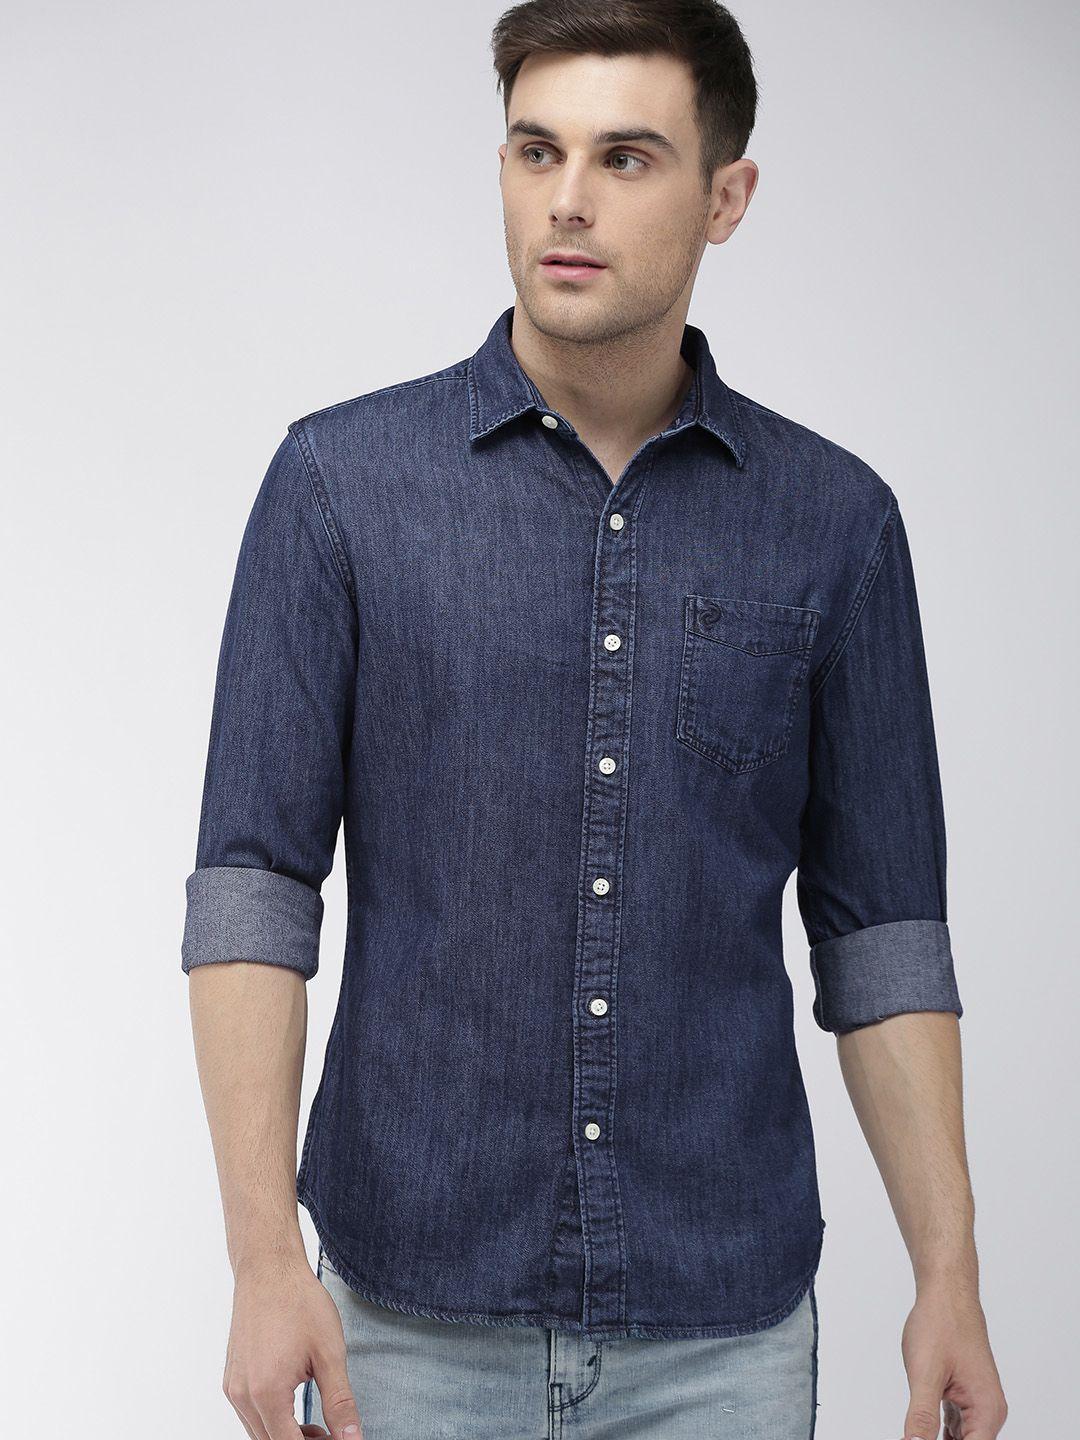 denizen-from-levis-men-blue-regular-fit-solid-denim-casual-shirt